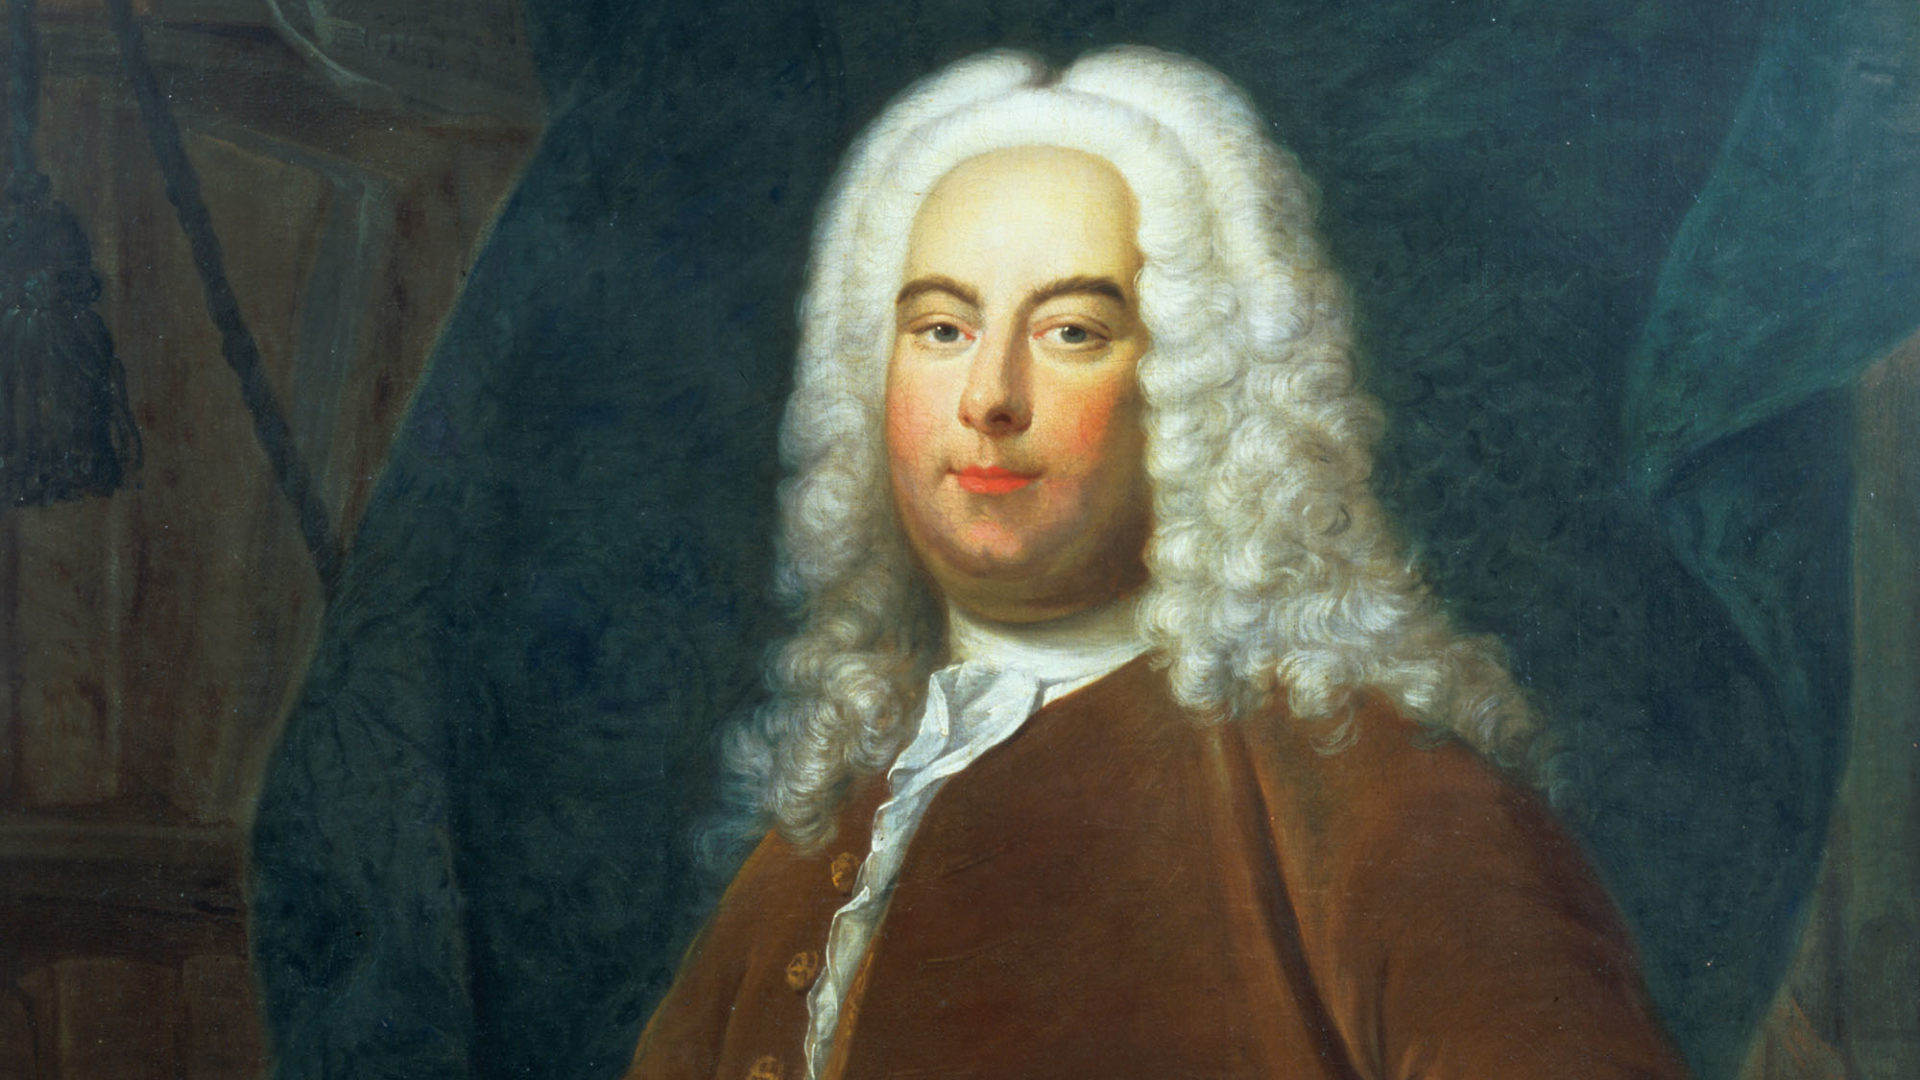 Handel The Philanthropist